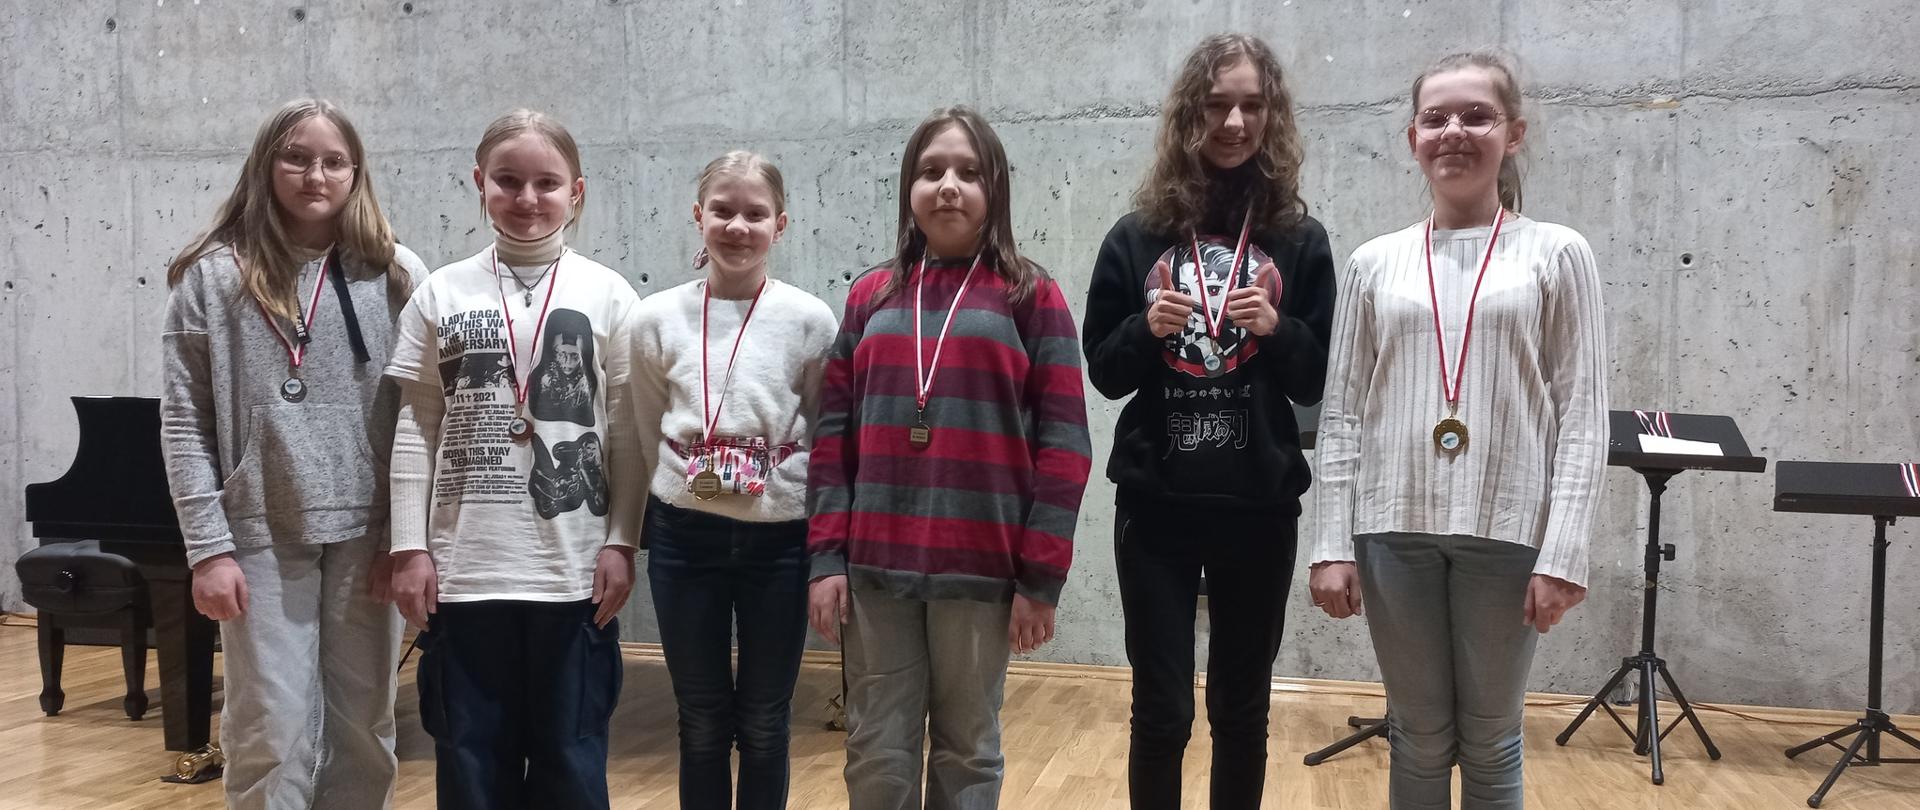 Zdjęcie przedstawia grupę uczniów stojących na scenie szkoły muzycznej. Uczennice prezentują medale otrzymane w konkursie.